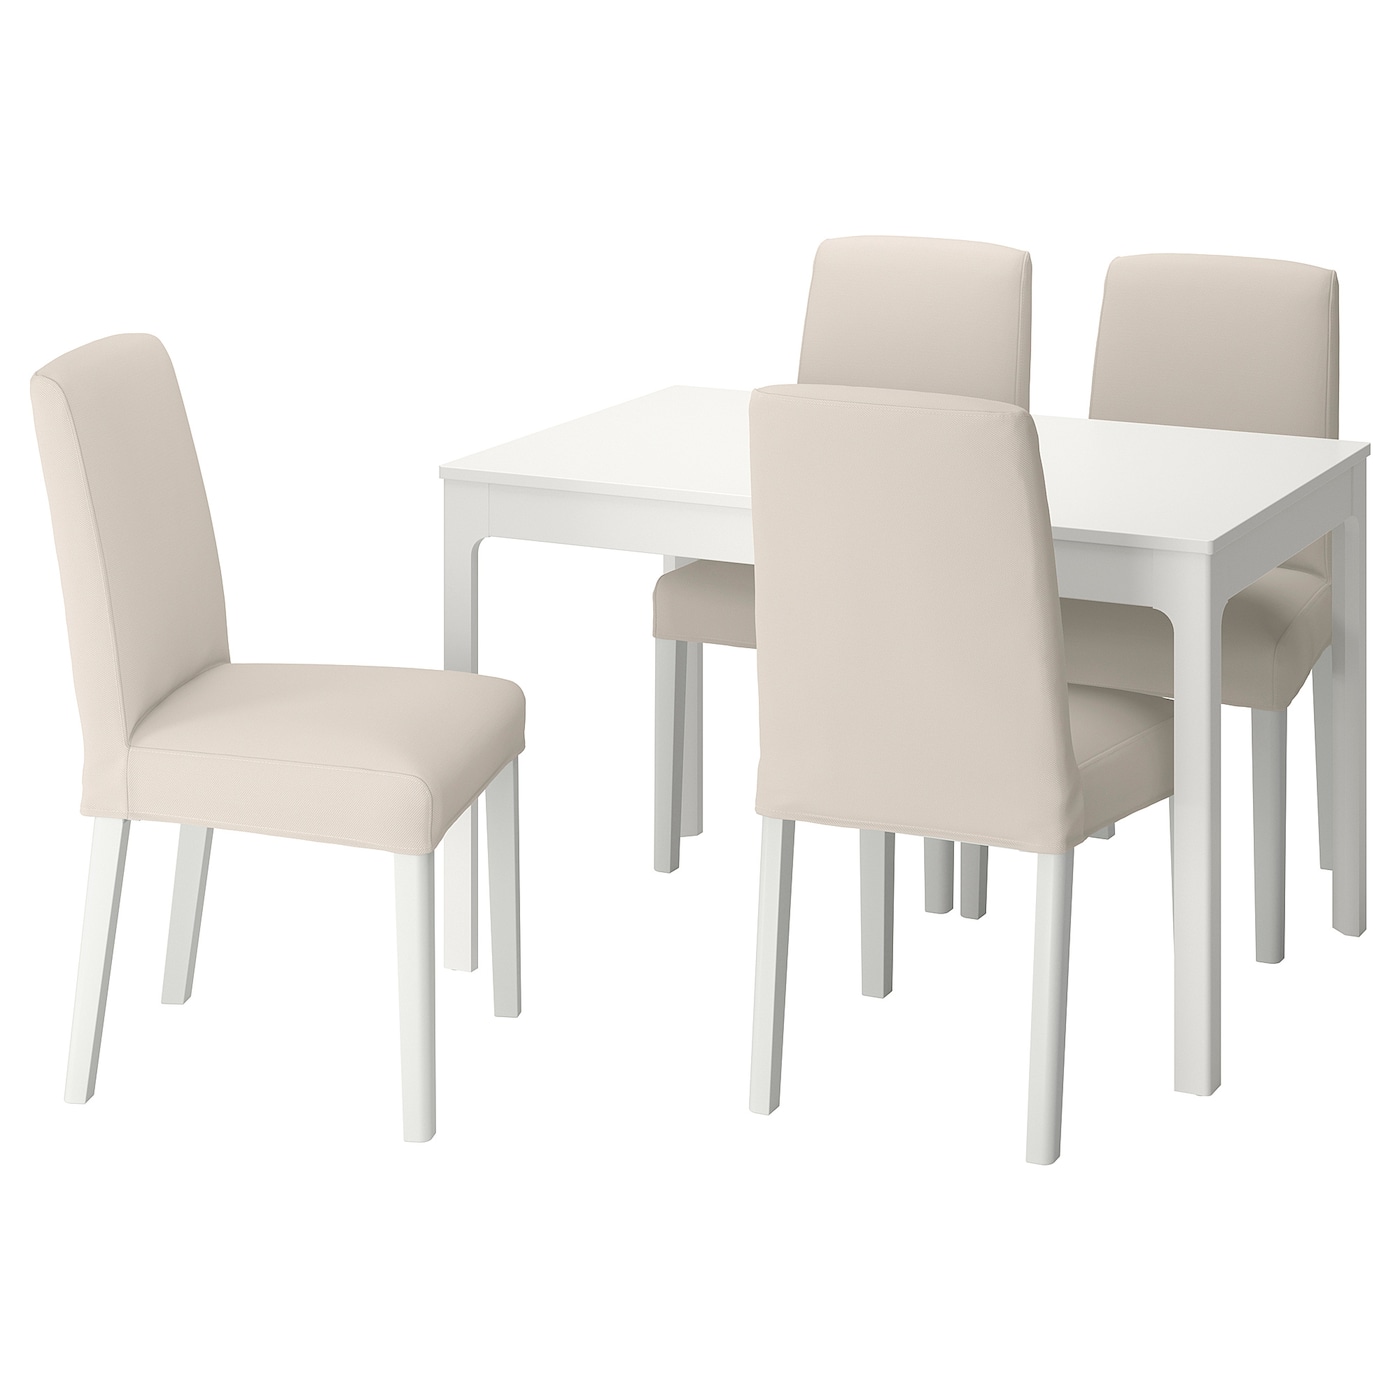 Стол и 4 стула - EKEDALEN / BERGMUND IKEA/ ЭКАДАЛЕН /БЕРГМУНД ИКЕА, 120/180 см, белый/бежевый